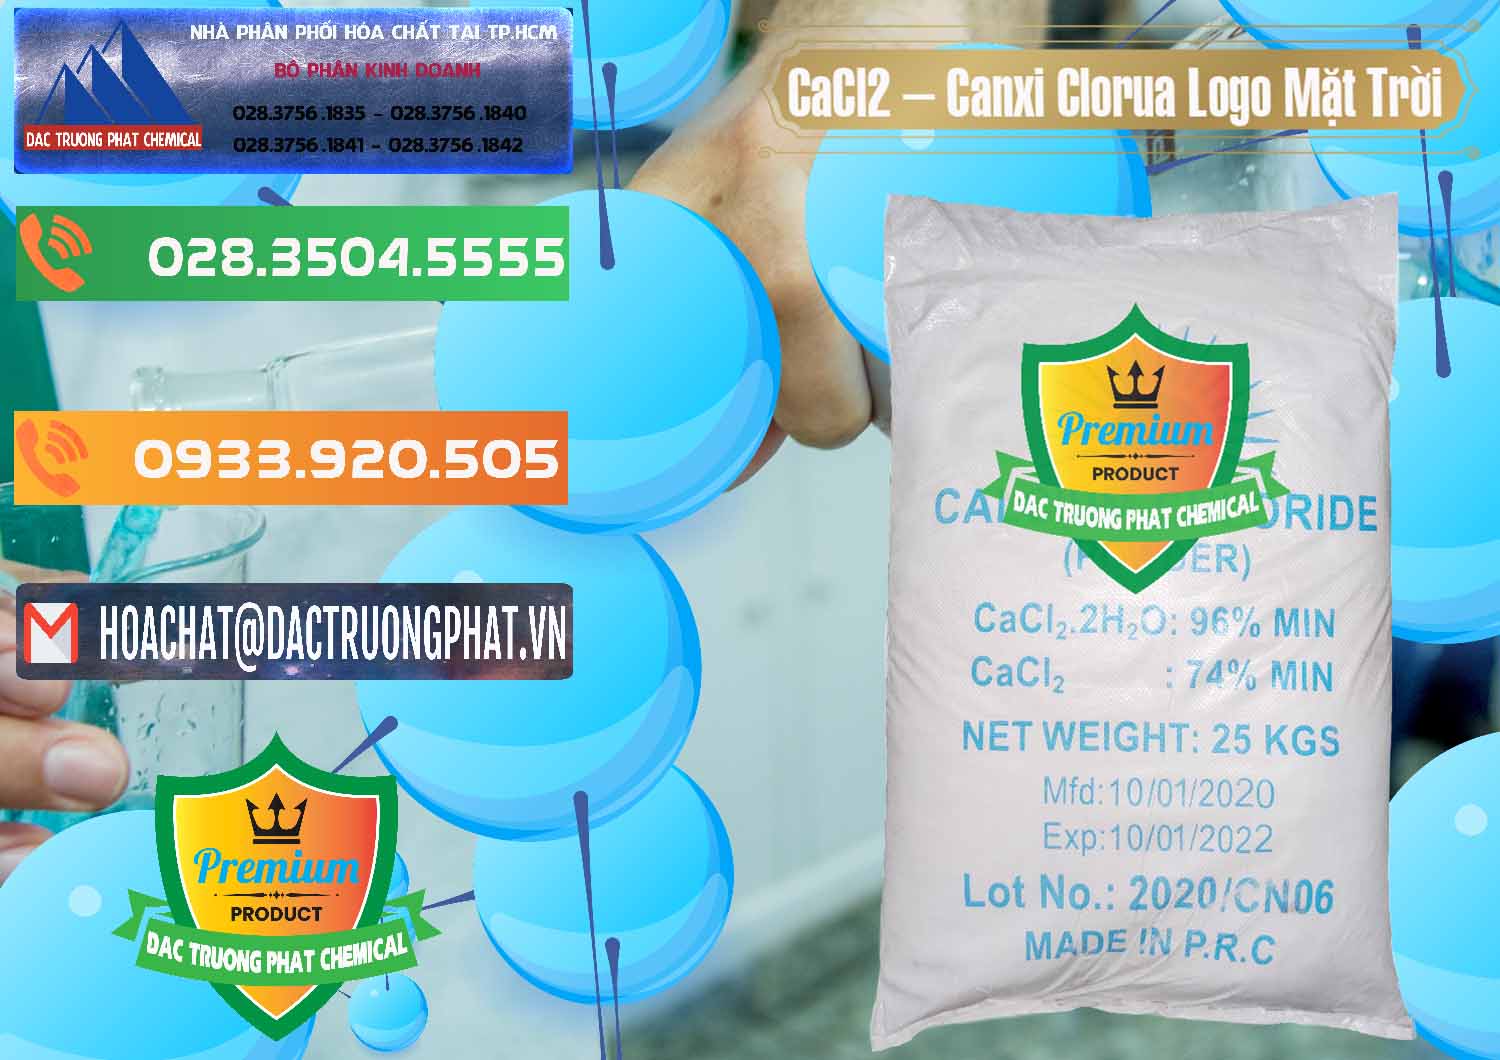 Công ty bán _ cung cấp CaCl2 – Canxi Clorua 96% Logo Mặt Trời Trung Quốc China - 0041 - Cty chuyên phân phối & nhập khẩu hóa chất tại TP.HCM - hoachatxulynuoc.com.vn